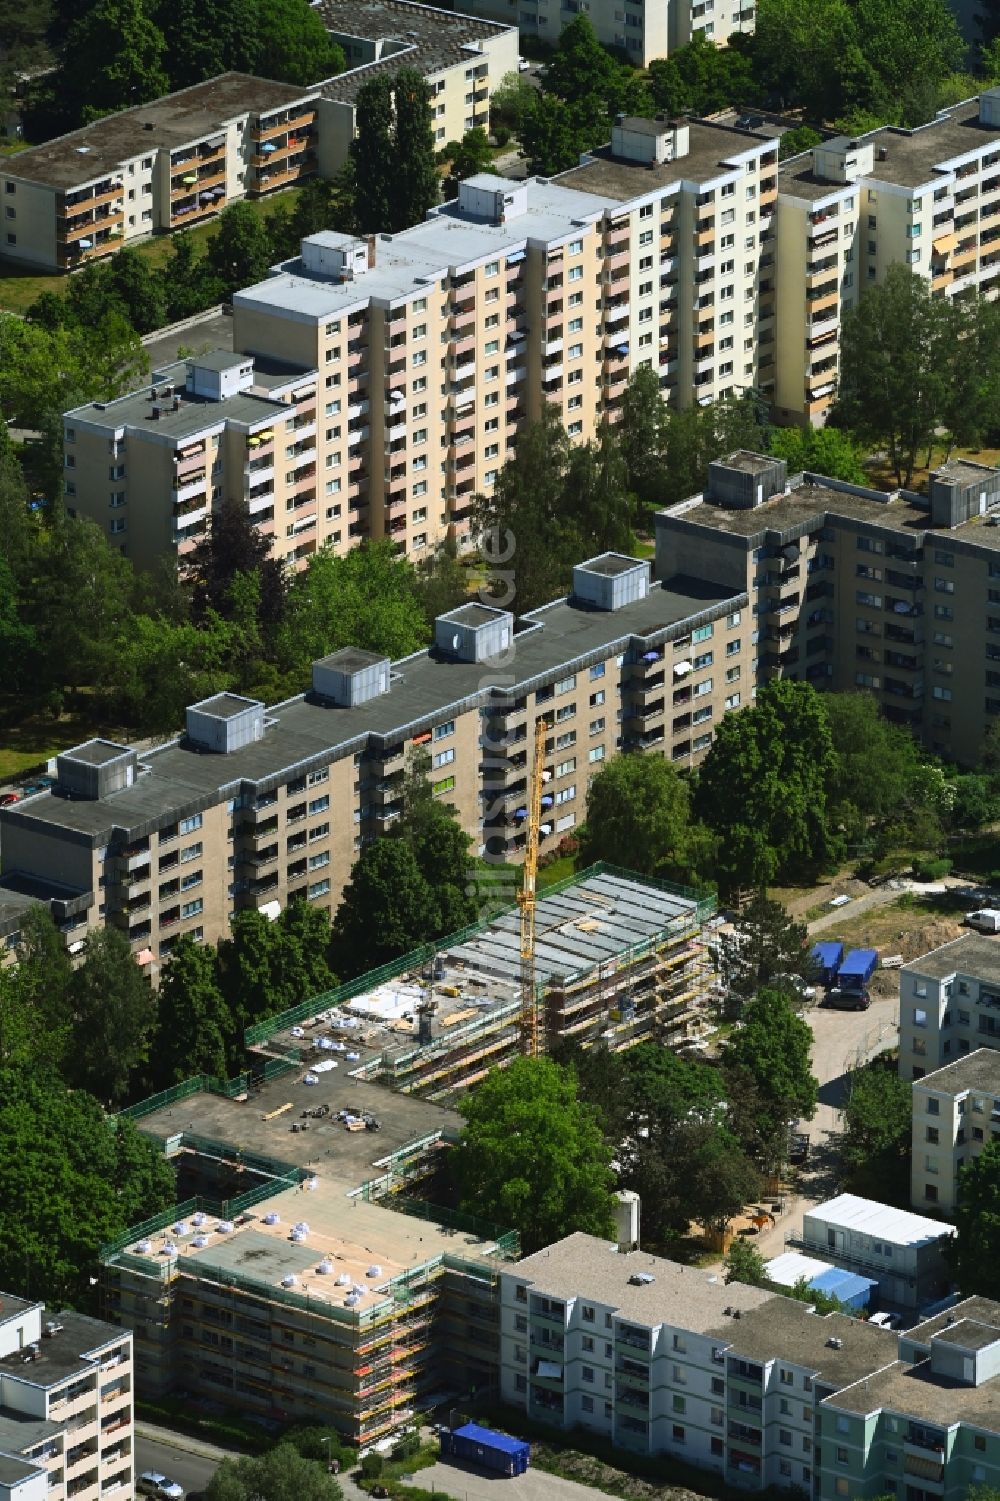 Berlin aus der Vogelperspektive: Baustelle zur Erweiterung eines Wohnhauses in Berlin, Deutschland